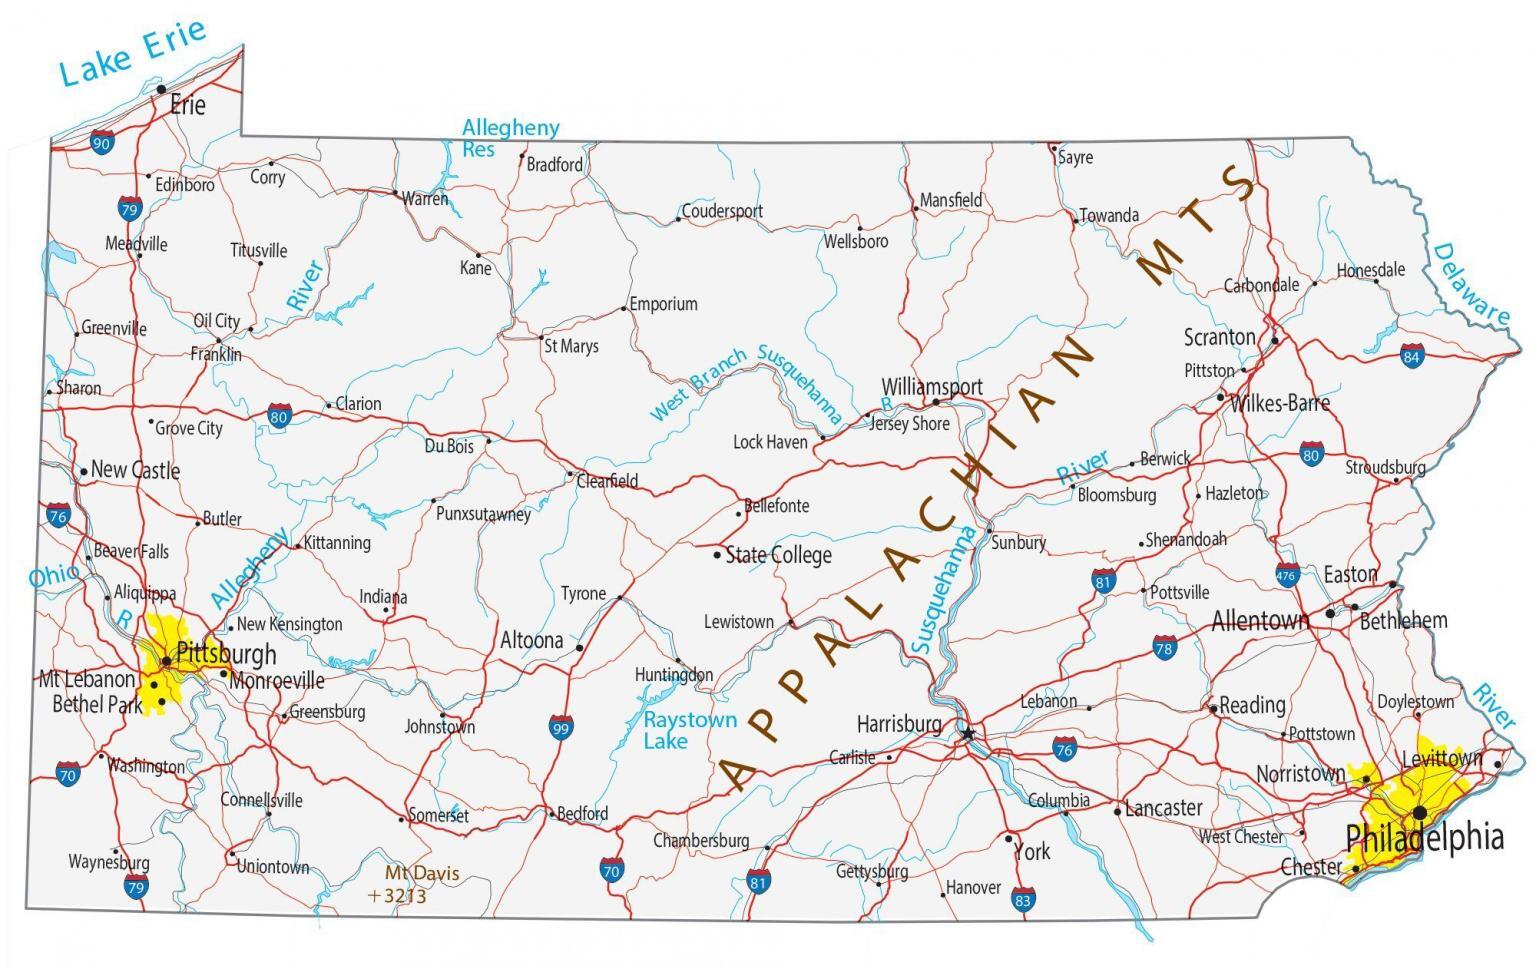 pennsylvania-lakes-and-rivers-map-gis-geography-gambaran